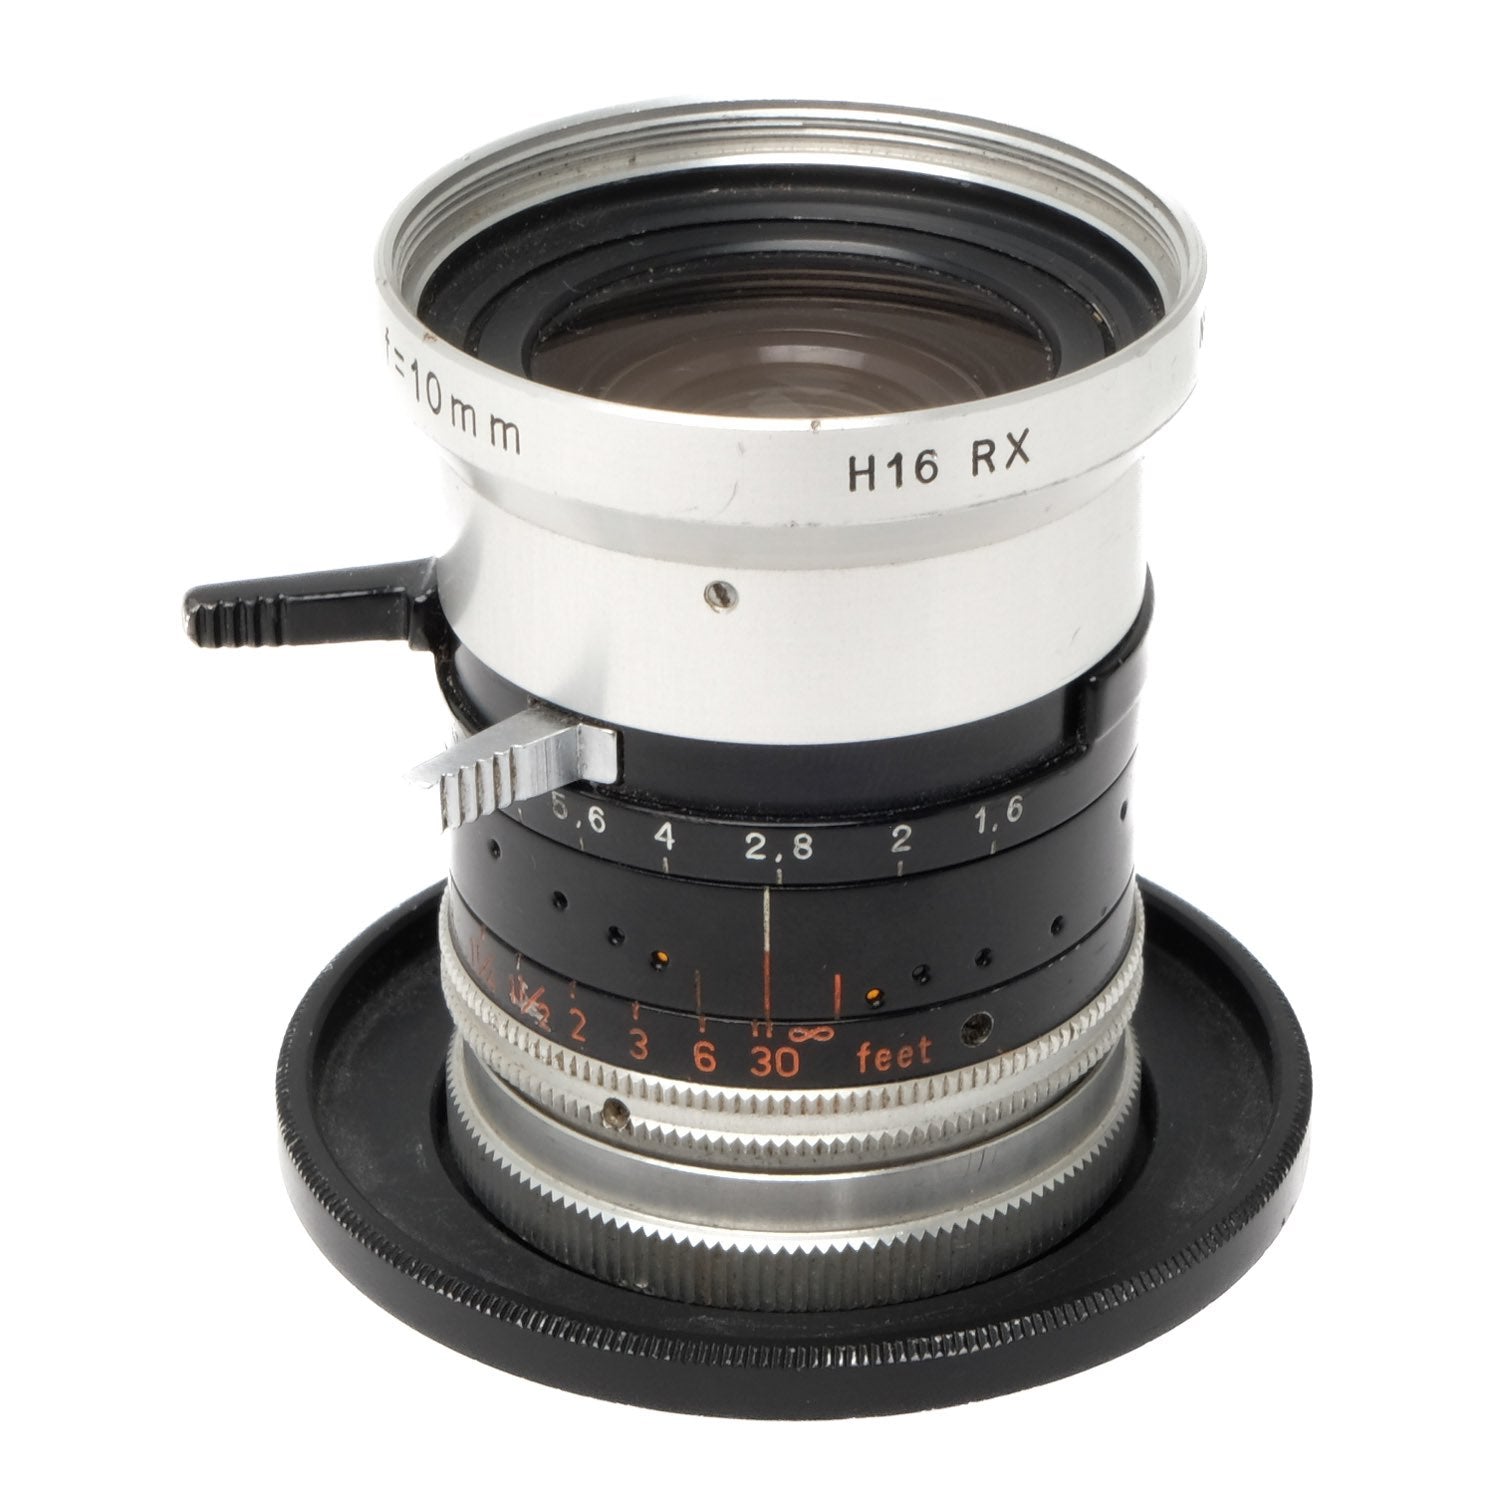 Kern 10mm f1.6 Switar H16 RX 1100456 – Camera West